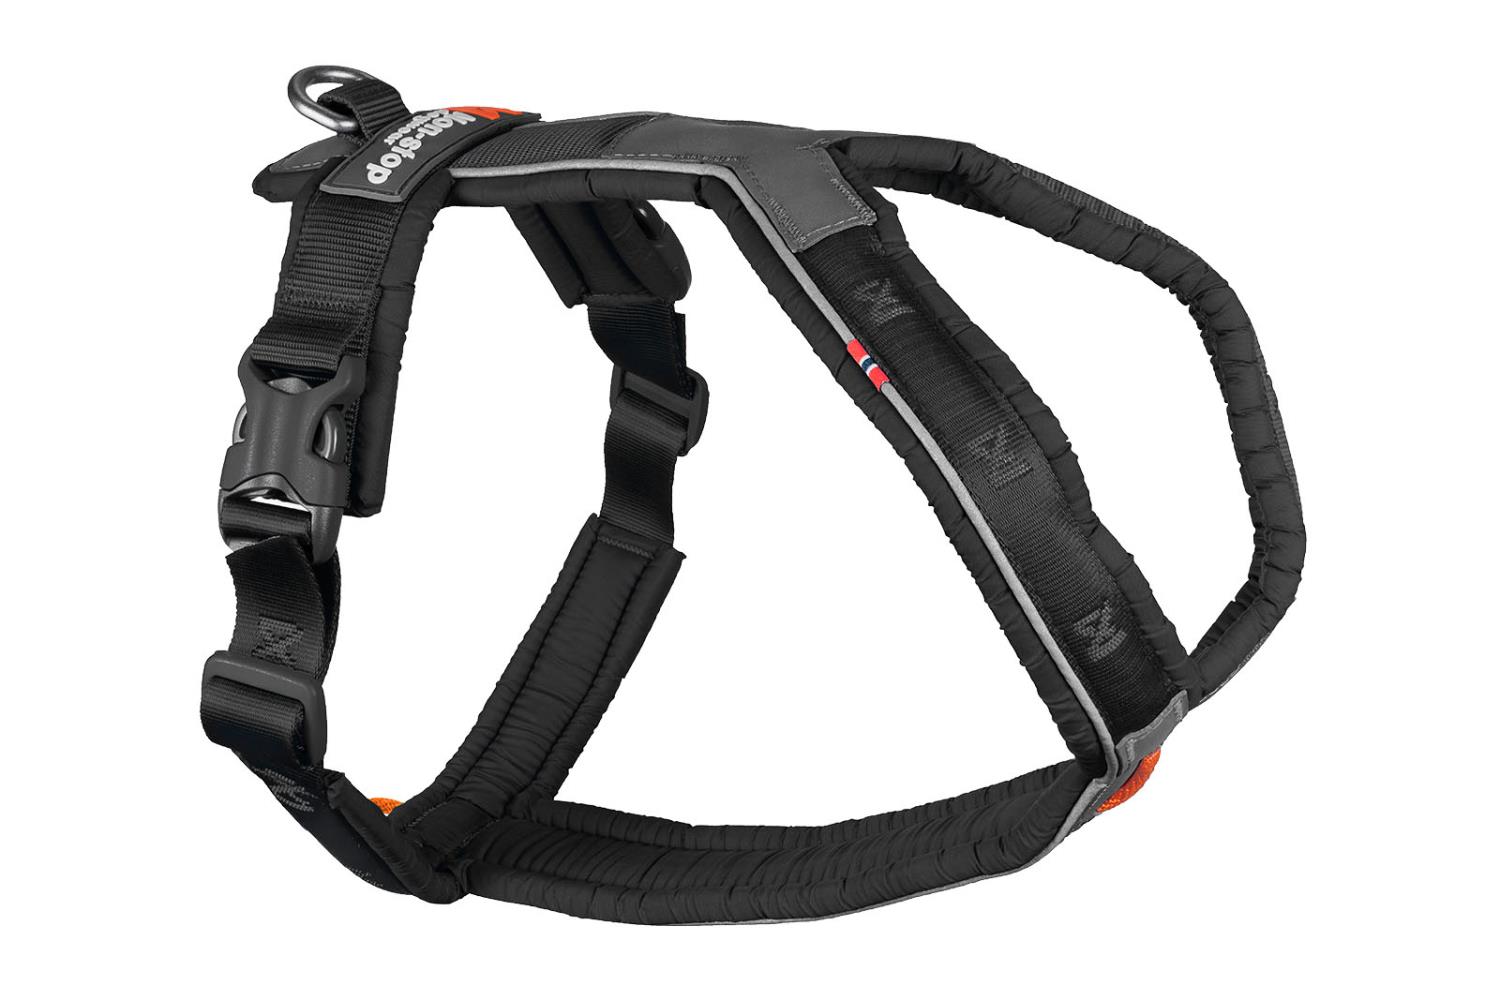 Non-stop Line harness 5.0, black, 5